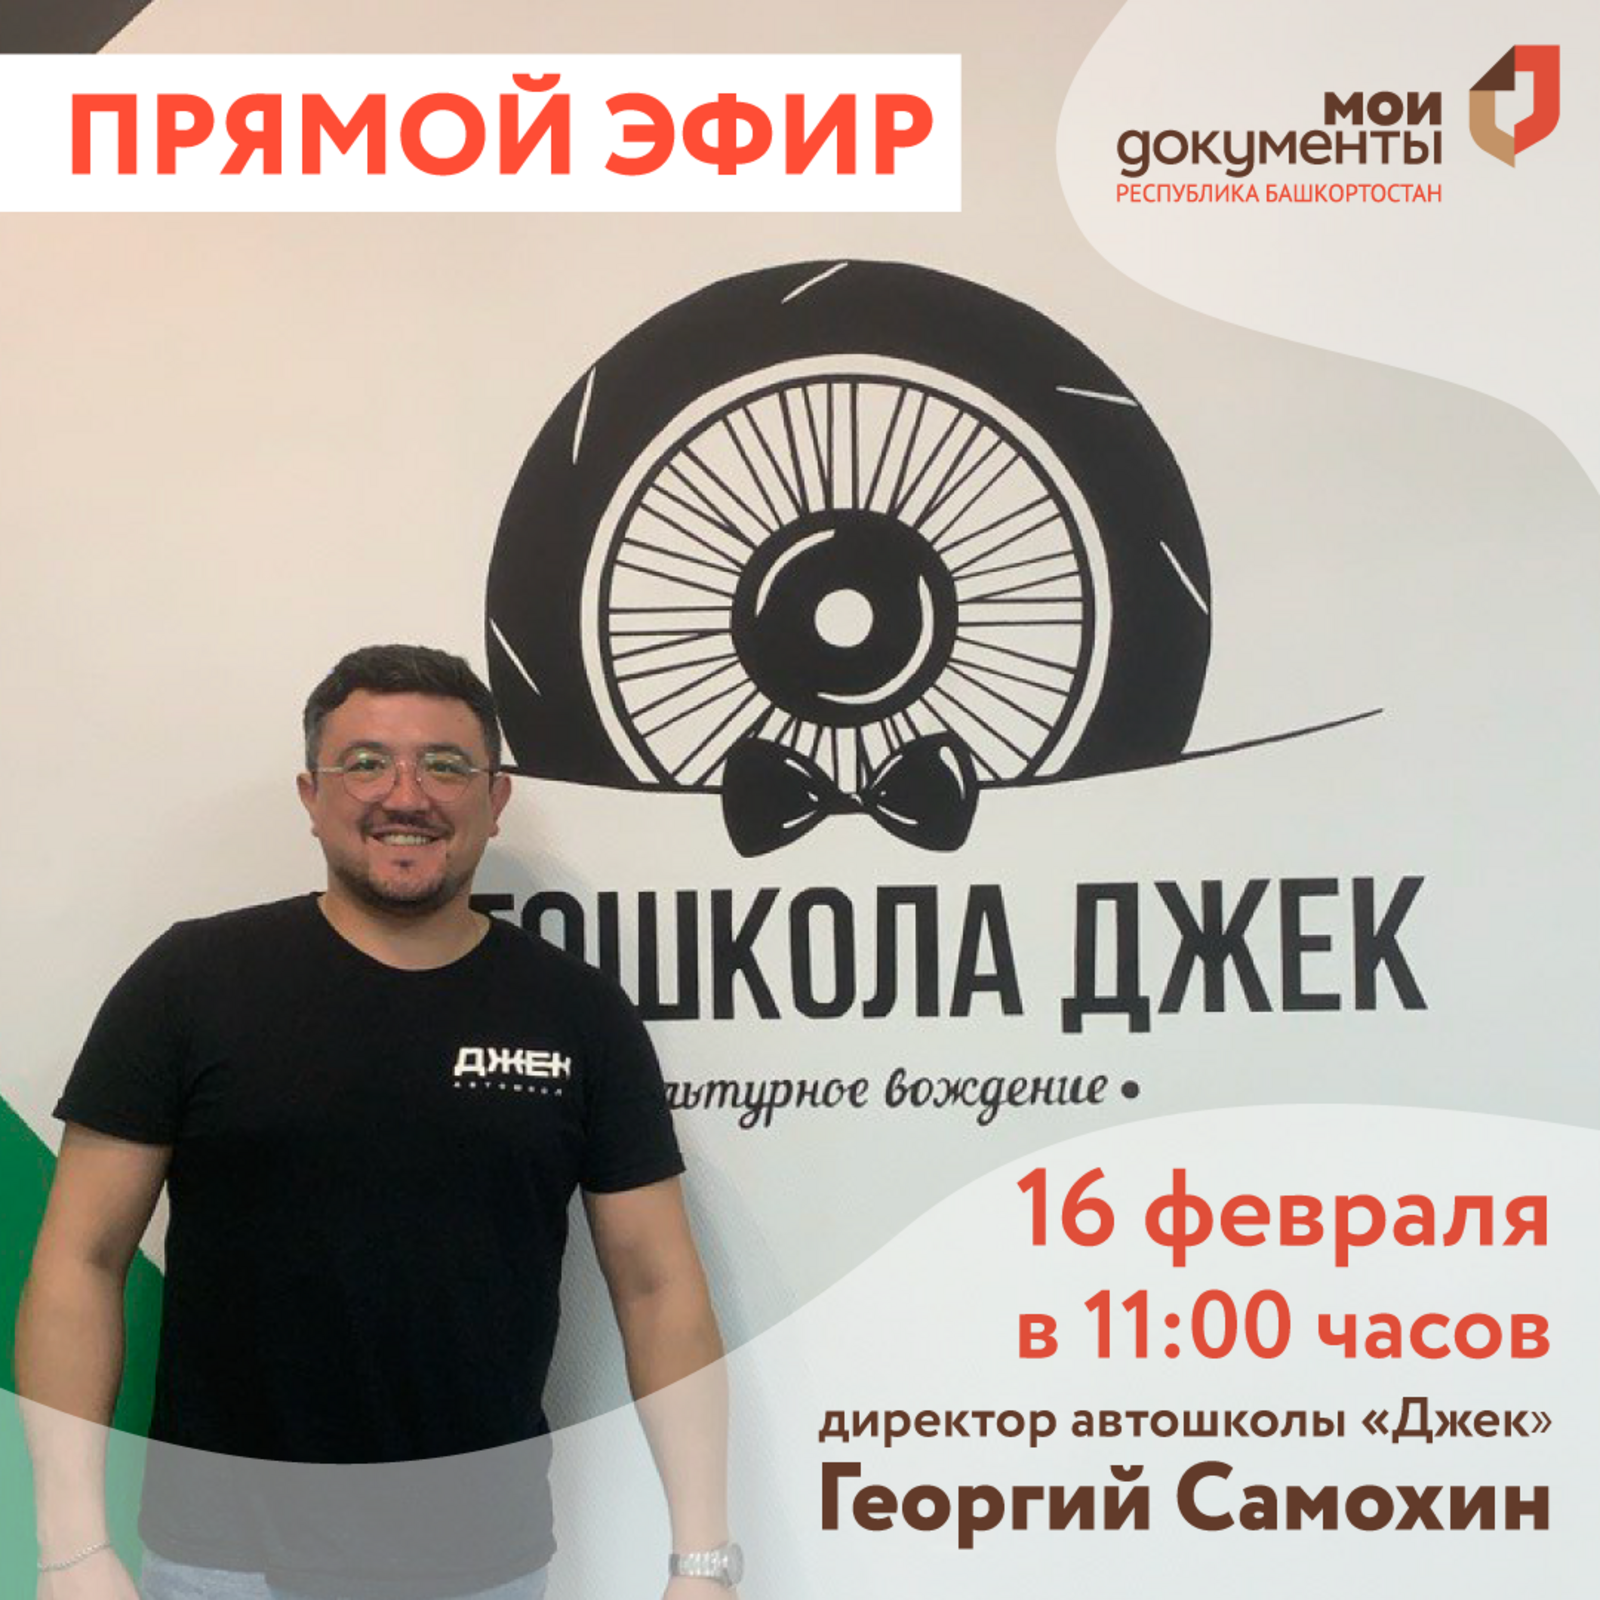 МФЦ Башкортостана проведет прямой эфир для предпринимателей